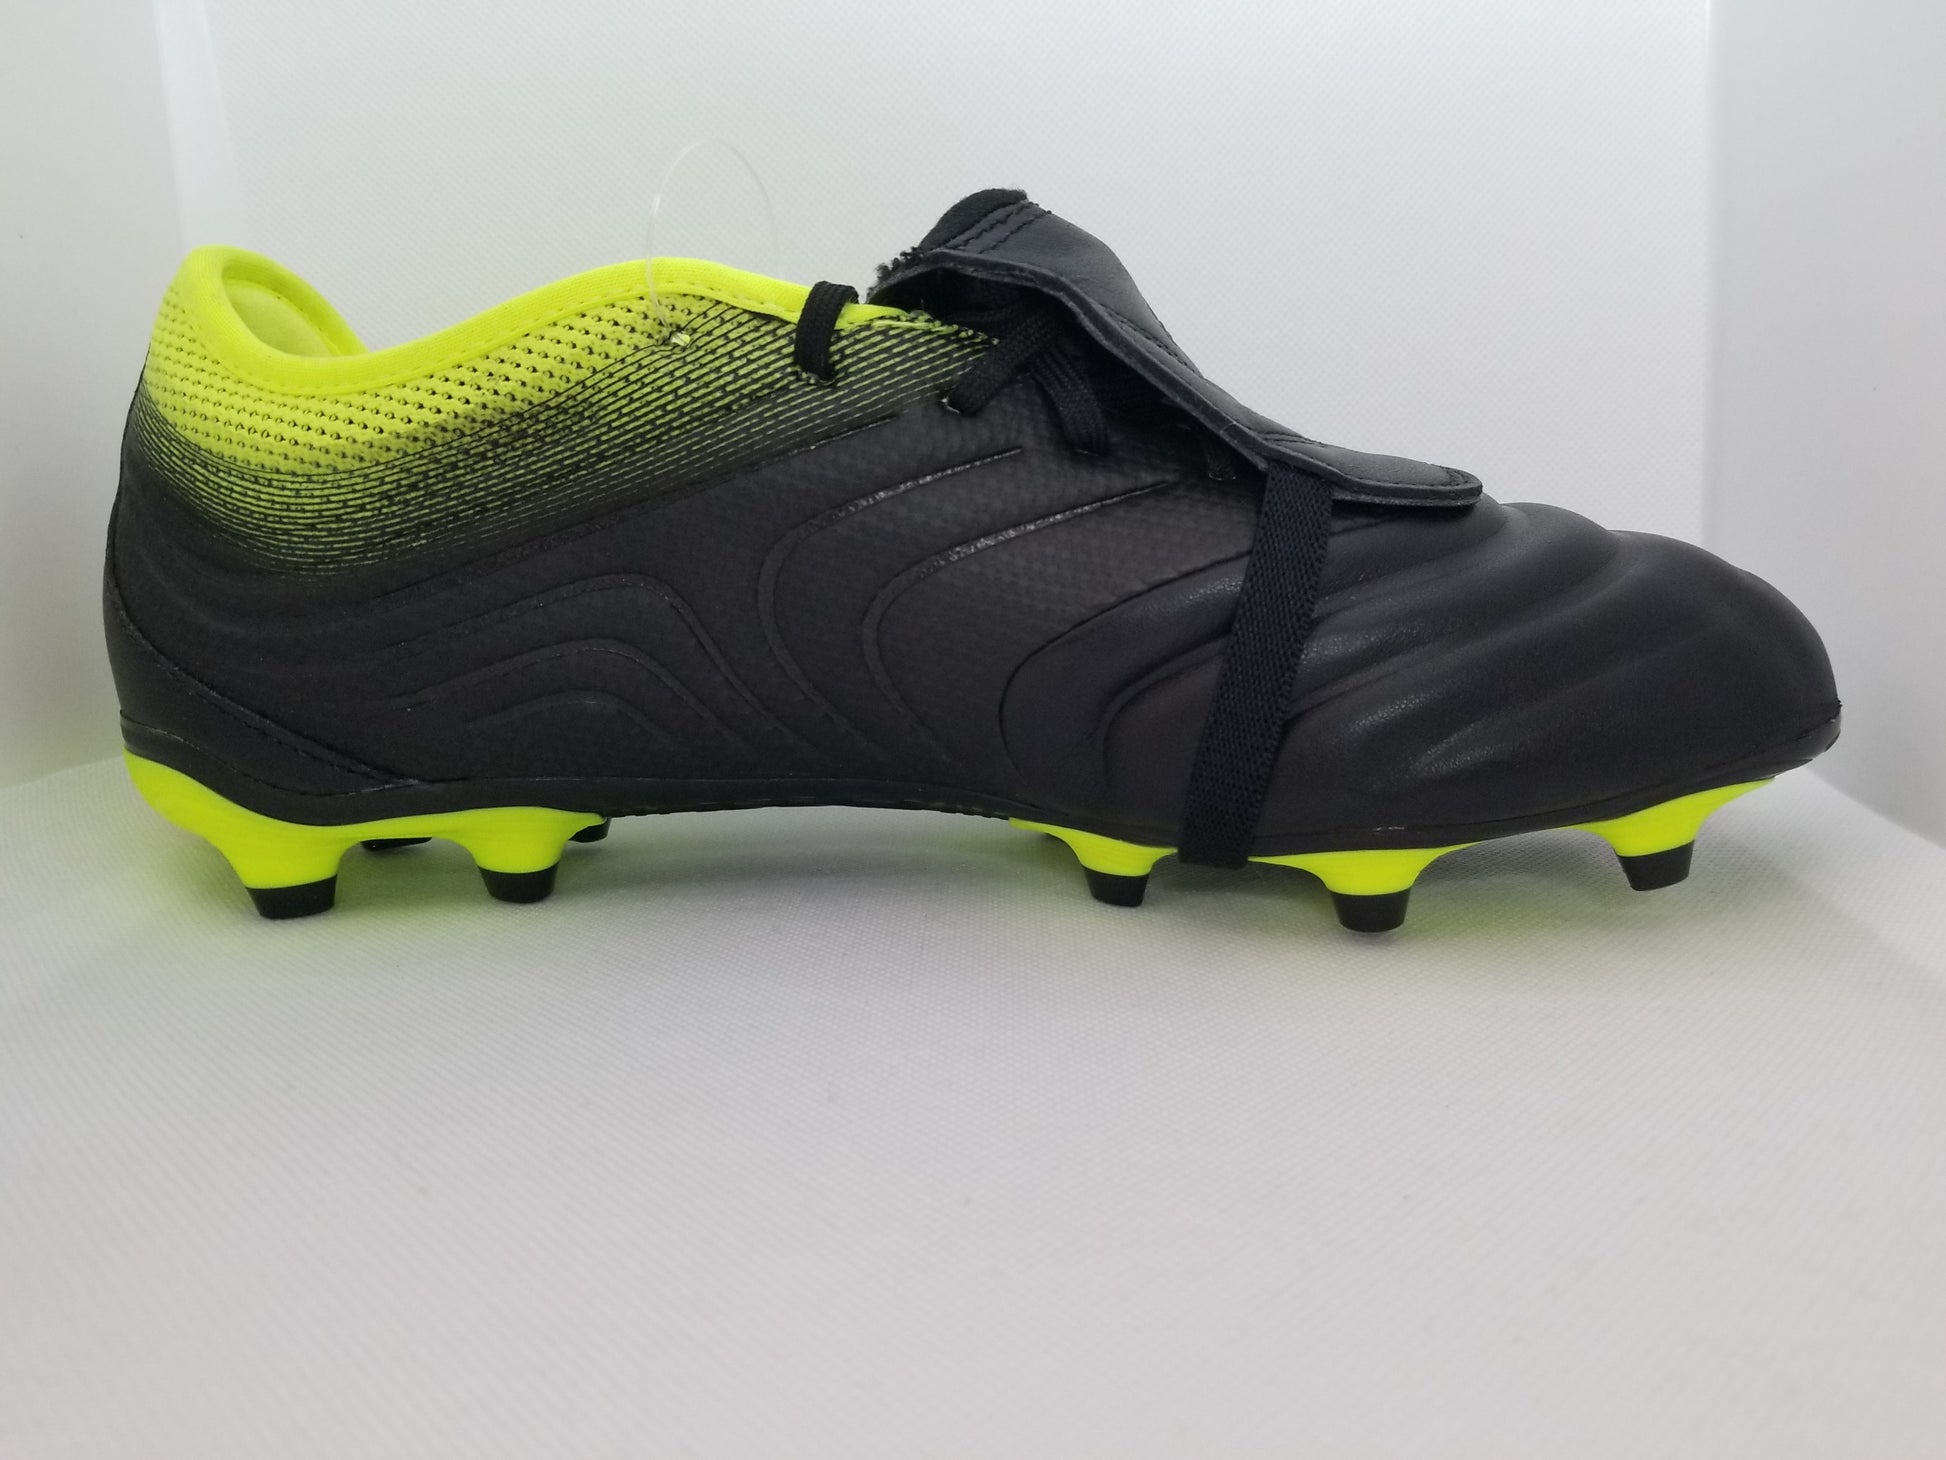 Adidas Gloro FG – Nyong Boots